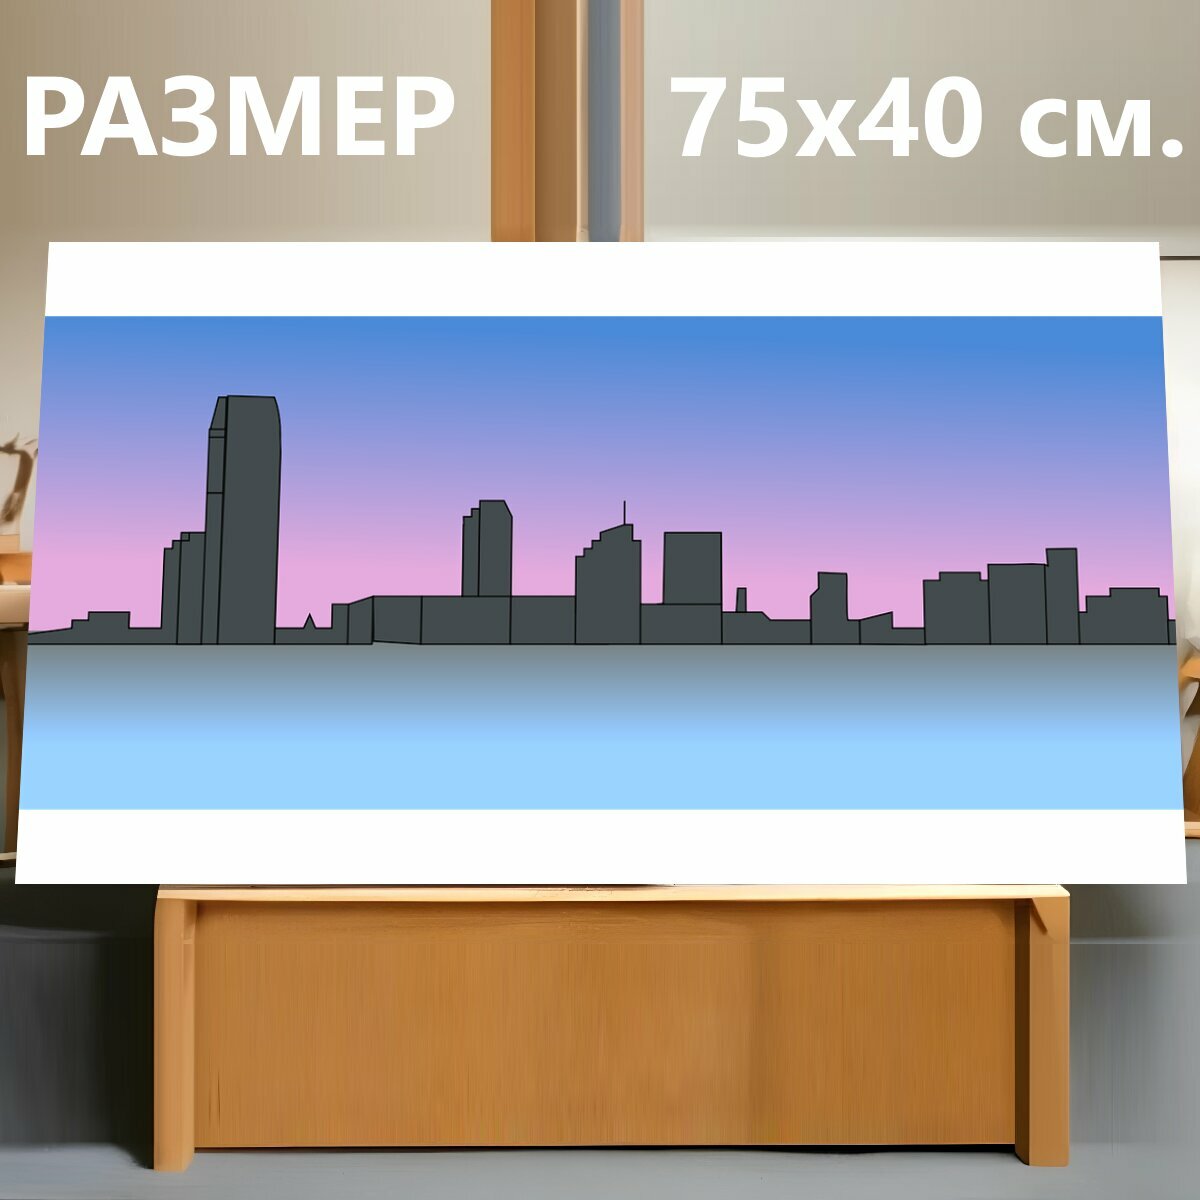 Картина на холсте "Здания, линия горизонта, городской пейзаж" на подрамнике 75х40 см. для интерьера